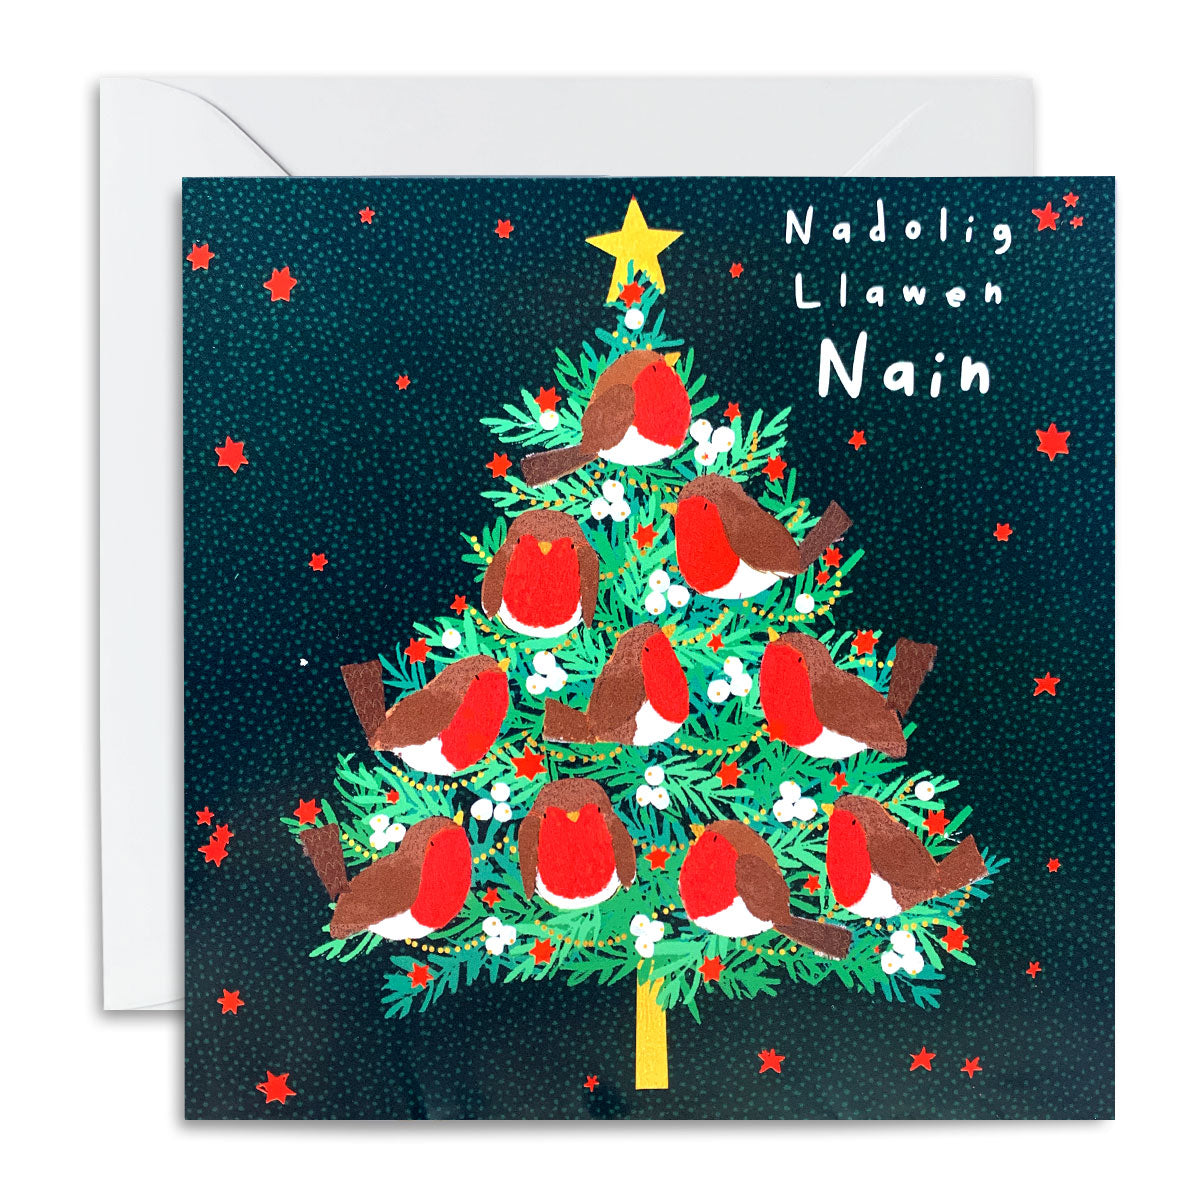 Nadolig Llawen Nain Tree of Robins Card